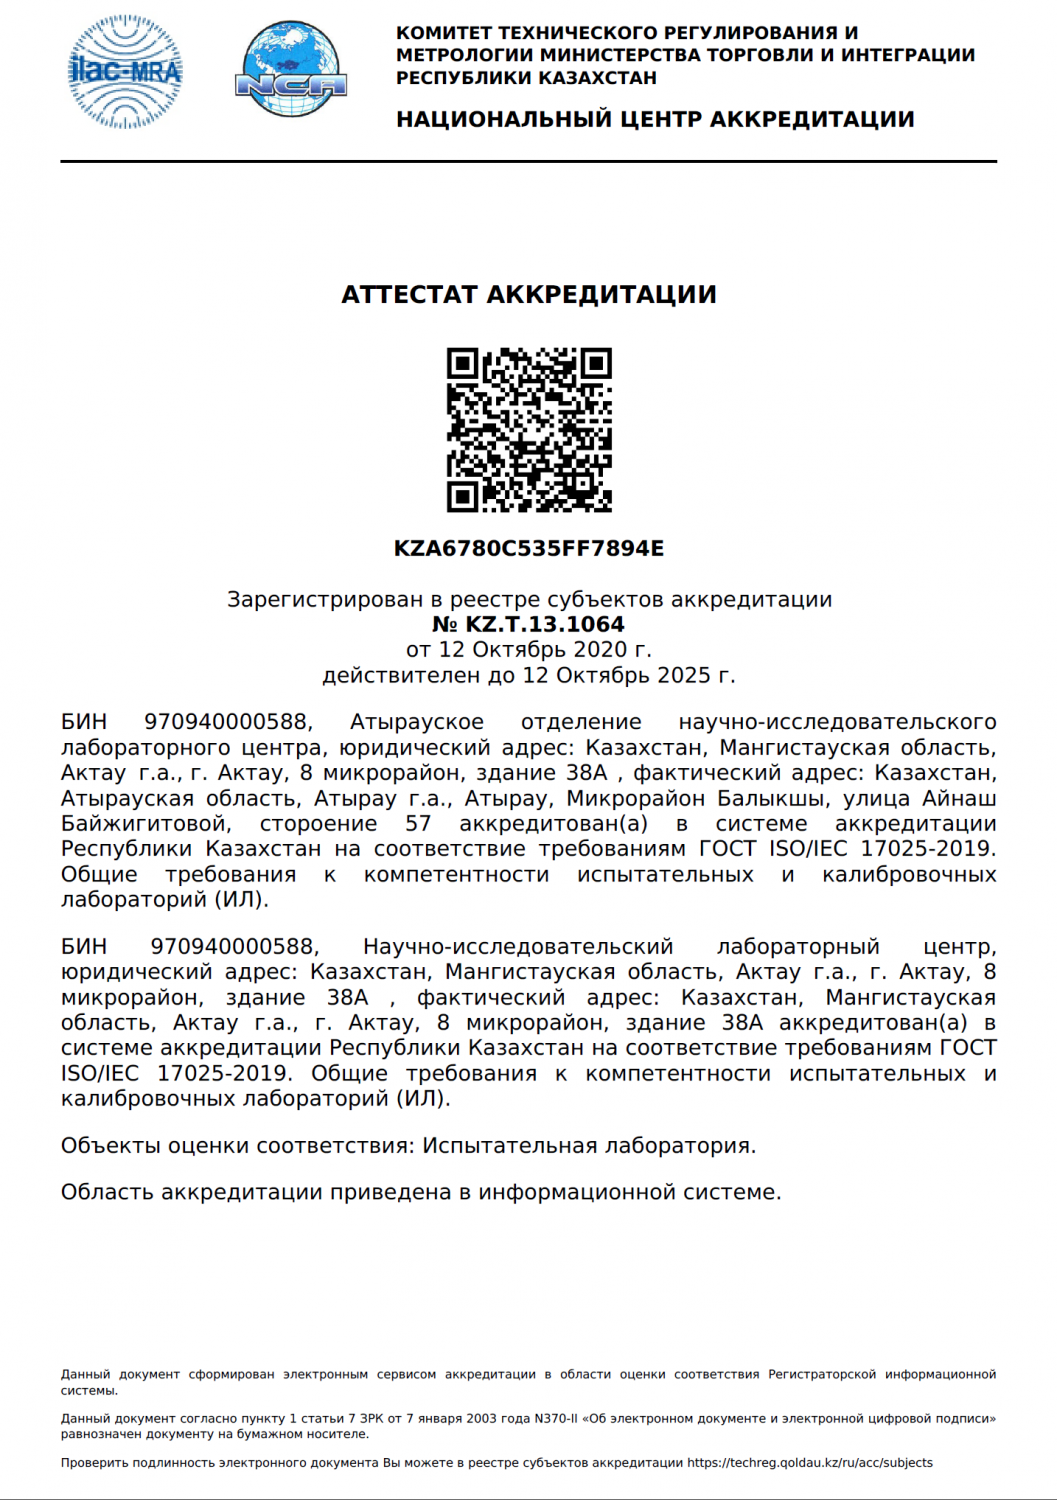 Аттестат аккредитации № KZ.T.13.1064 от 12 октября 2020 года